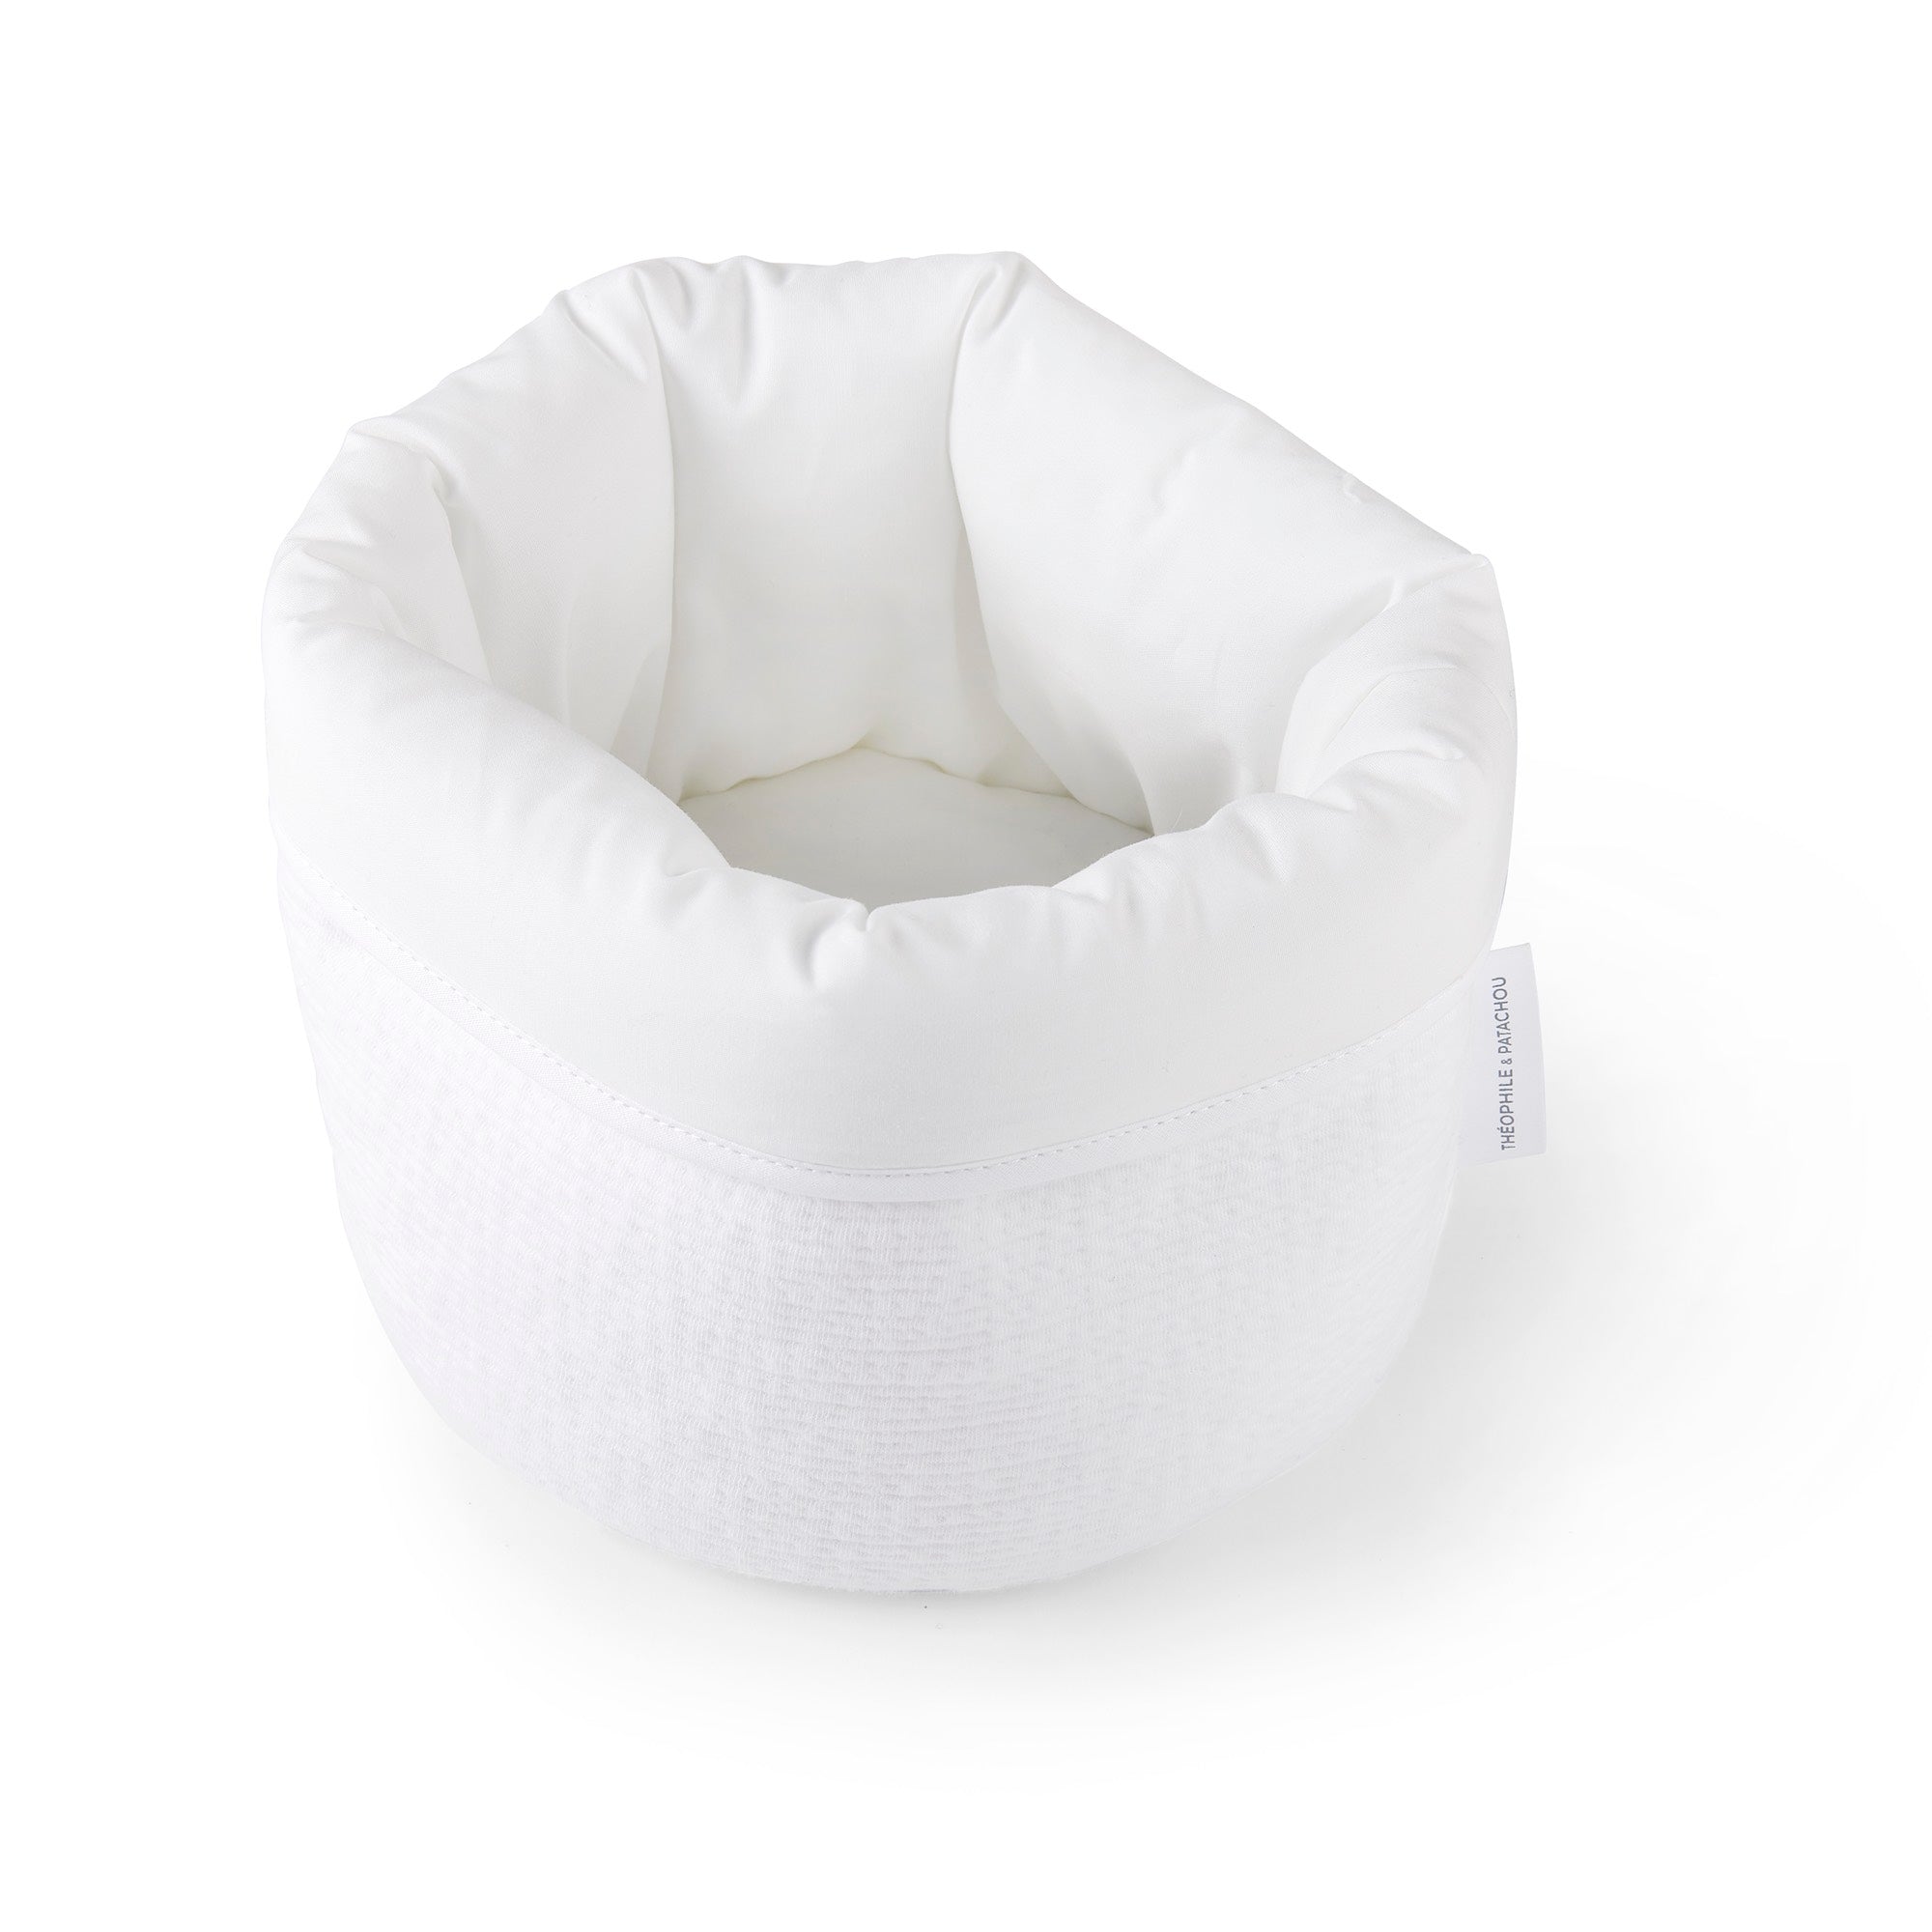 Theophile & Patachou Baby Round Toilet Basket - Cotton White